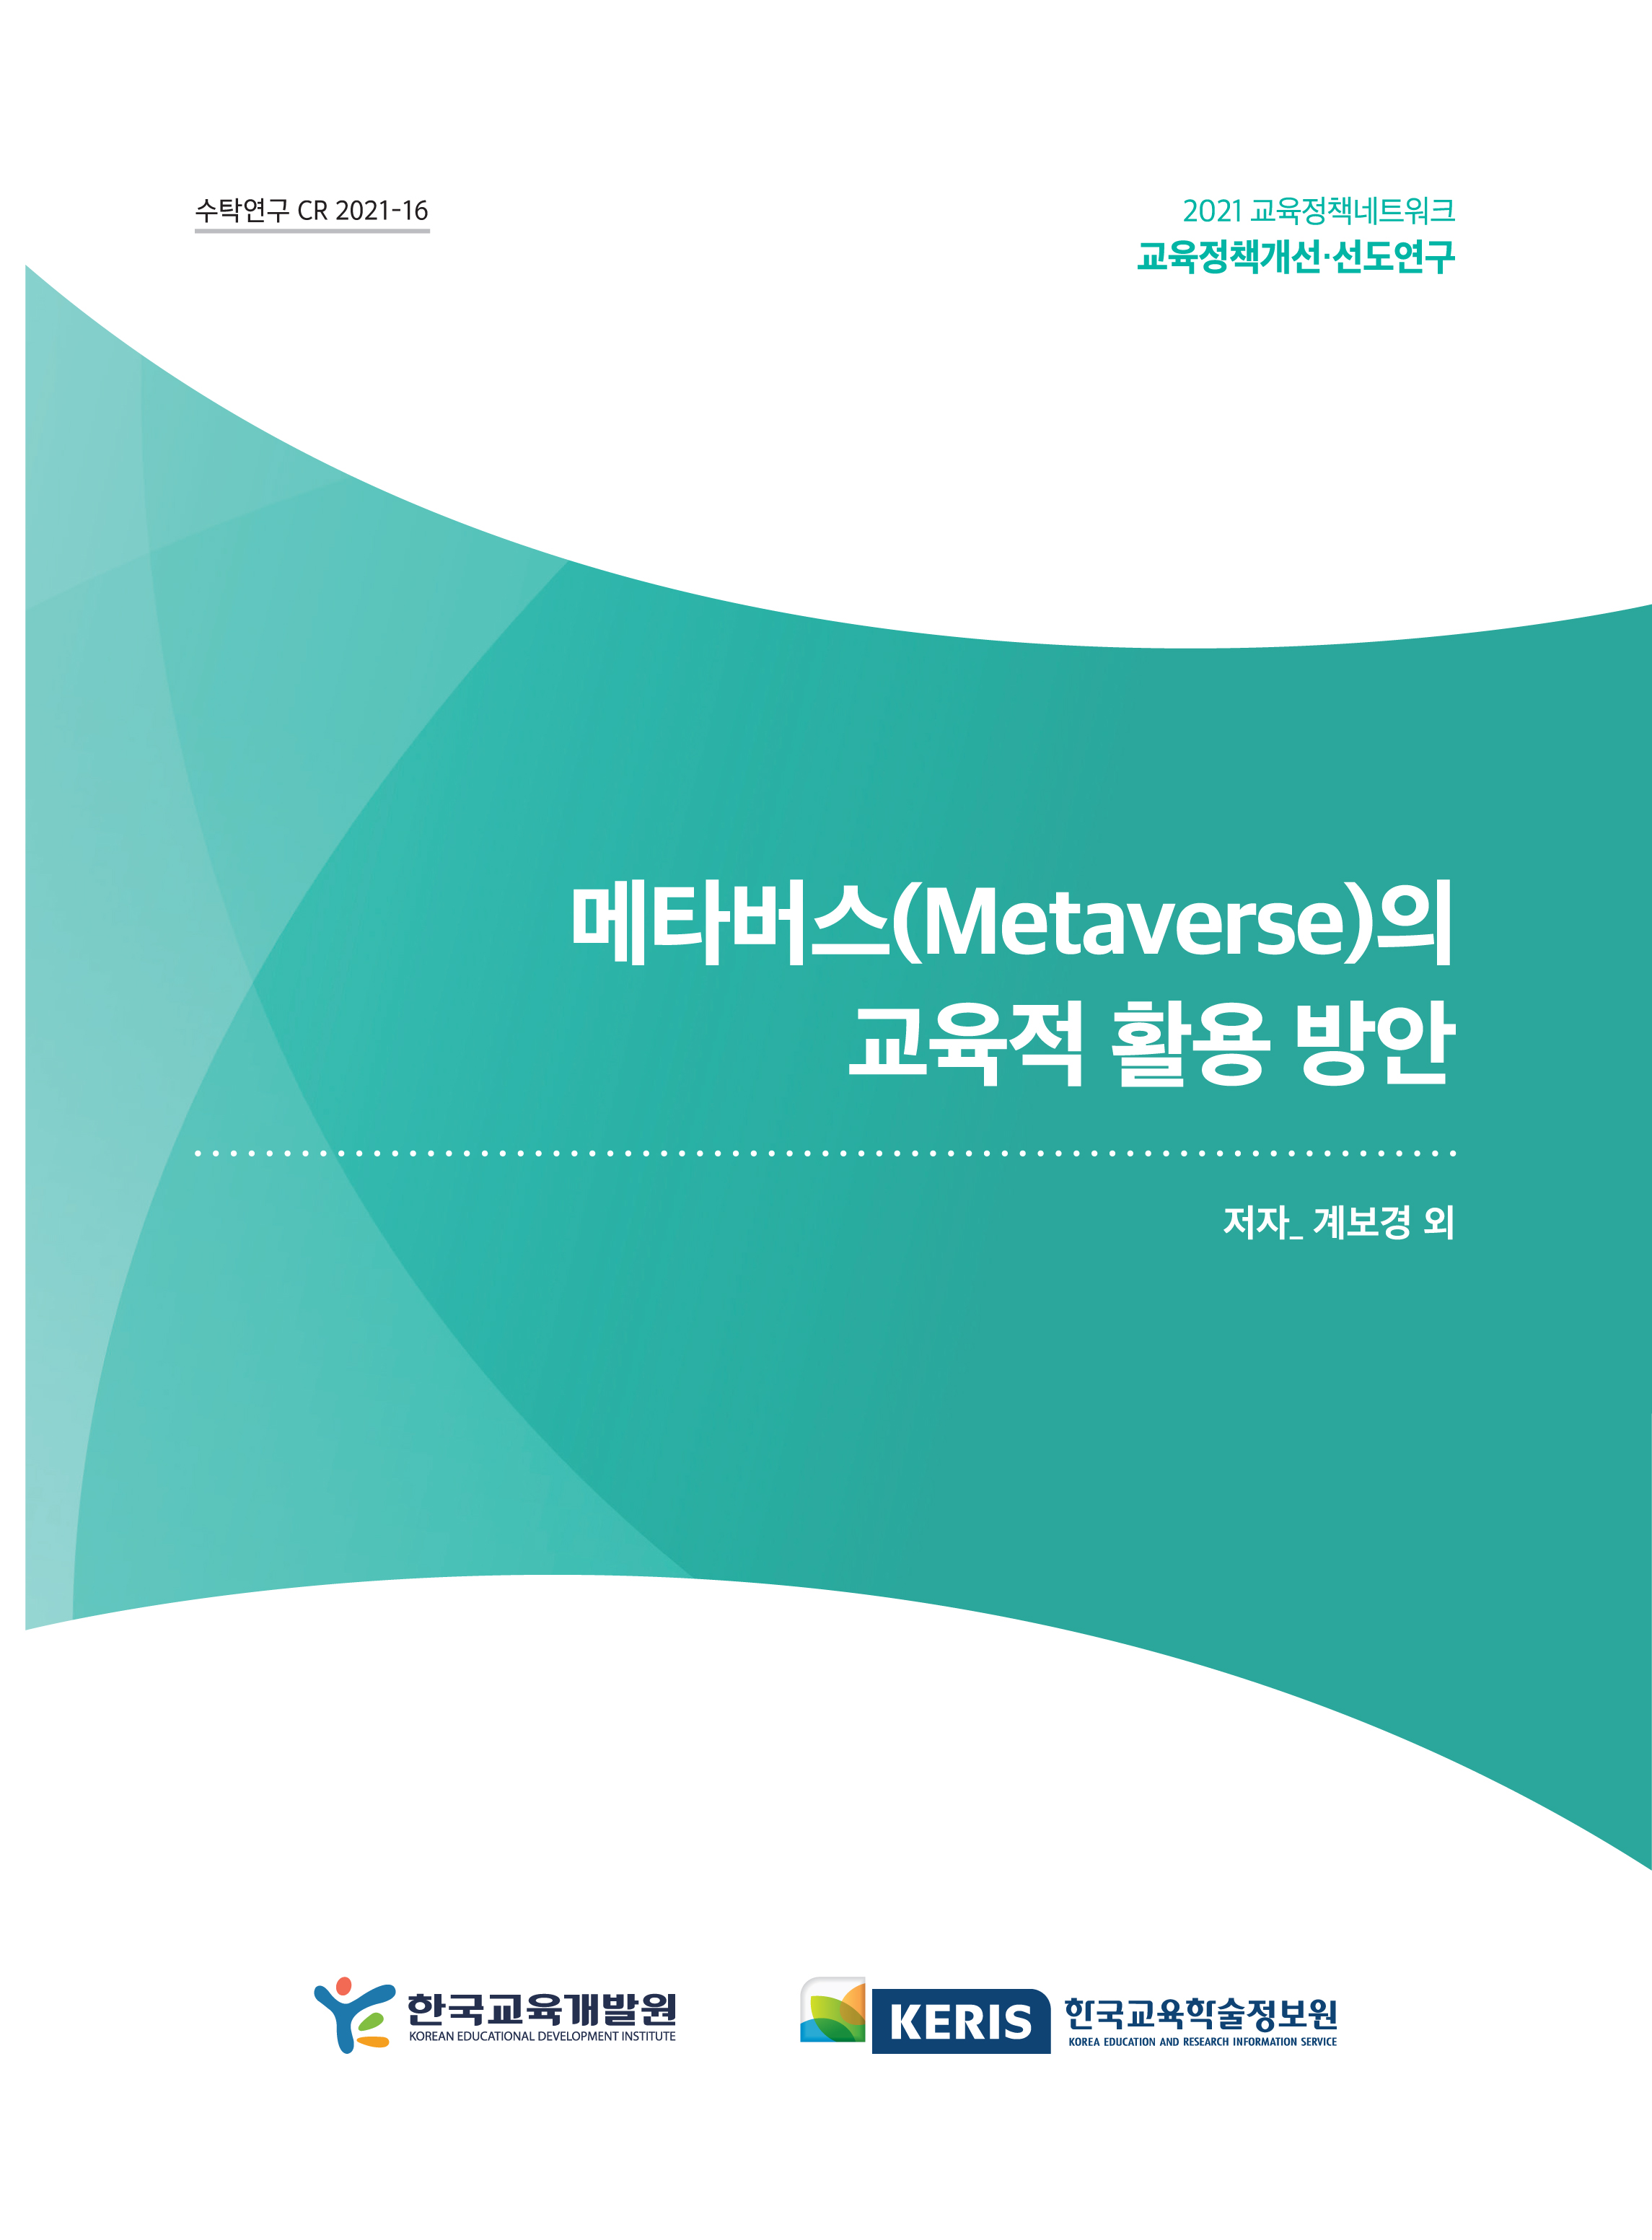 메타버스(Metaverse)의 교육적 활용 방안